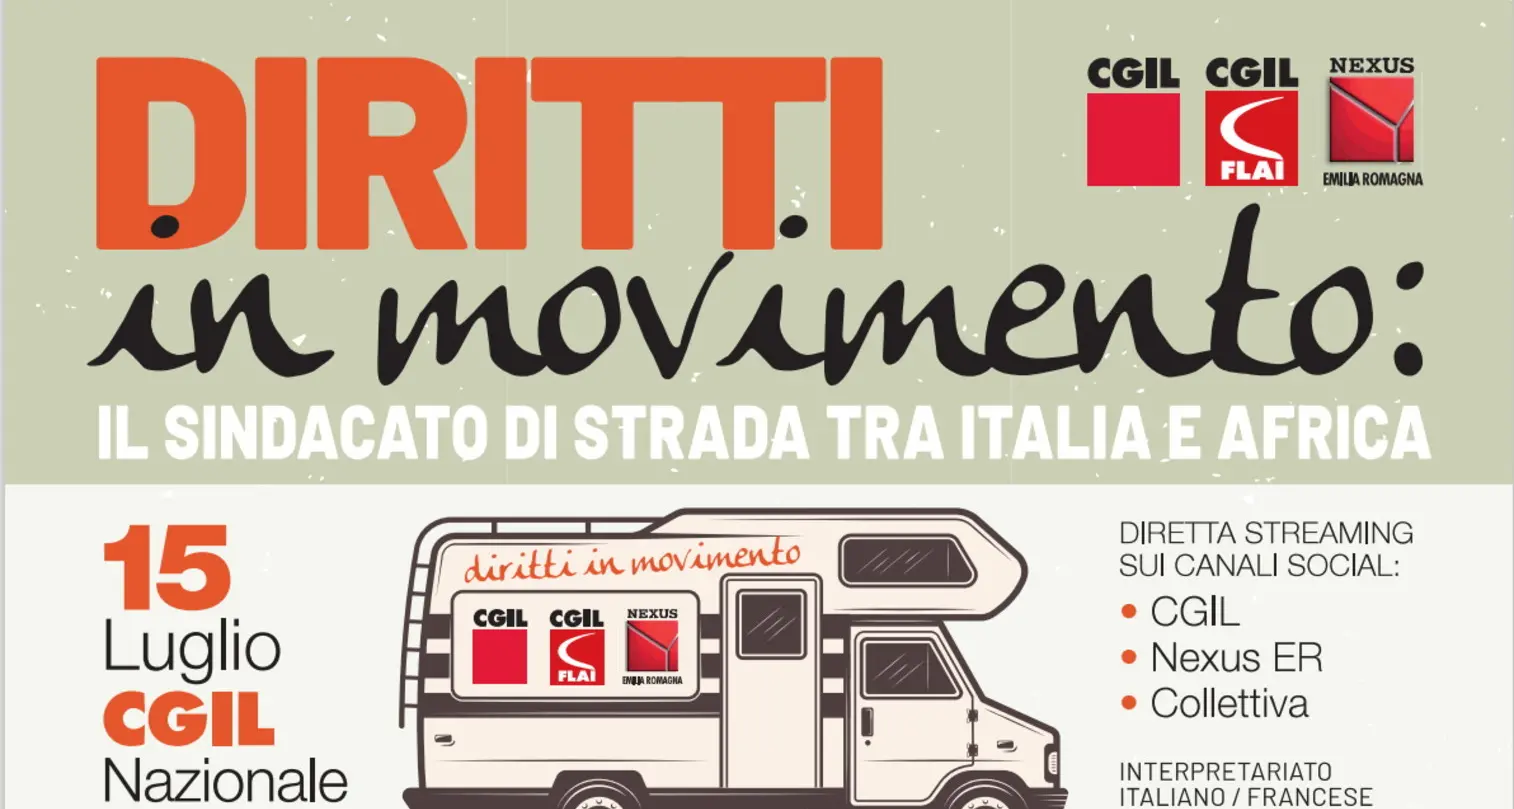 Cgil, Flai e Nexus Emilia Romagna iniziativa ‘Diritti in movimento: il sindacato di strada tra Italia e Africa’